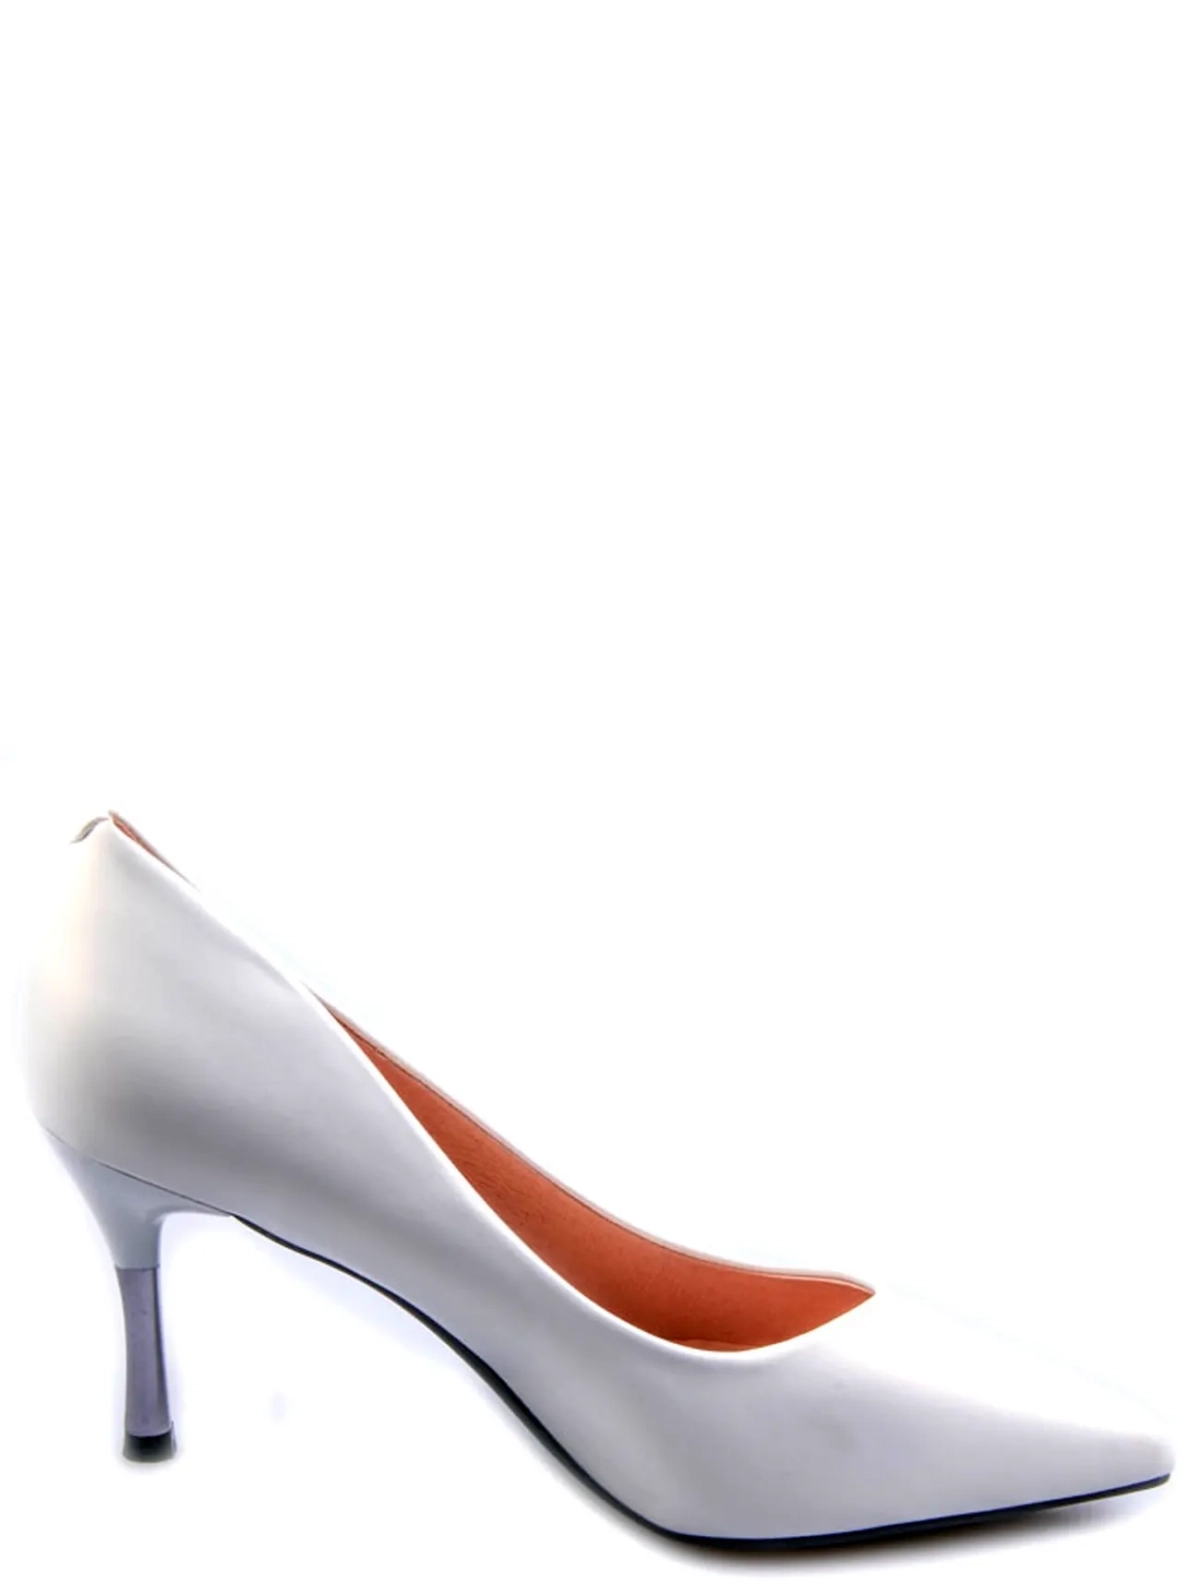 UILLIRRY FDU18-2 женские туфли